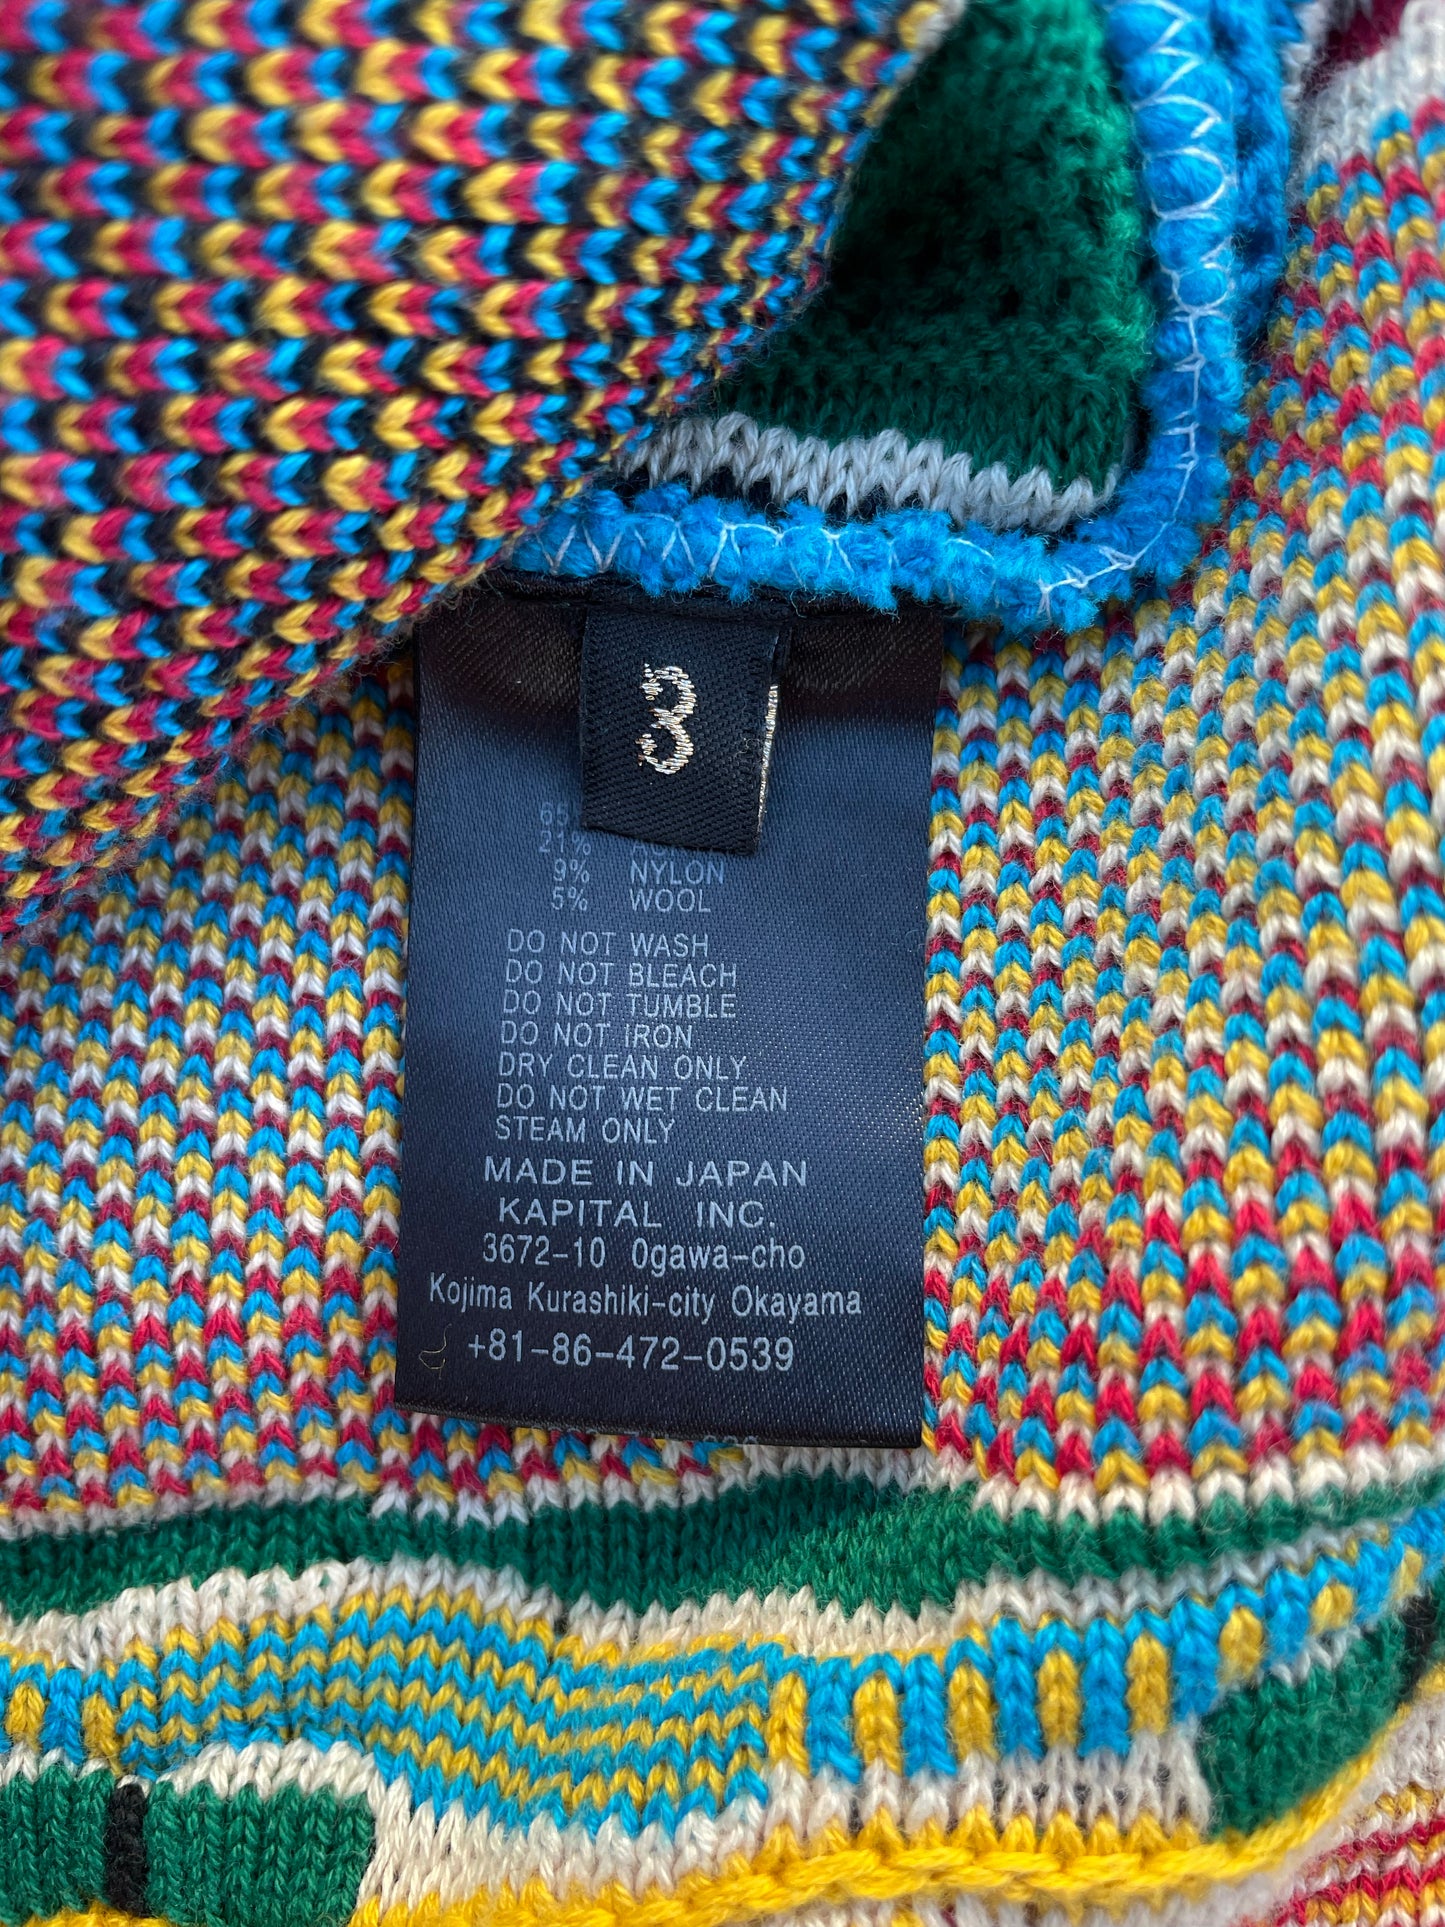 Kapital 7G Kachina Gaudy Knit Sweater